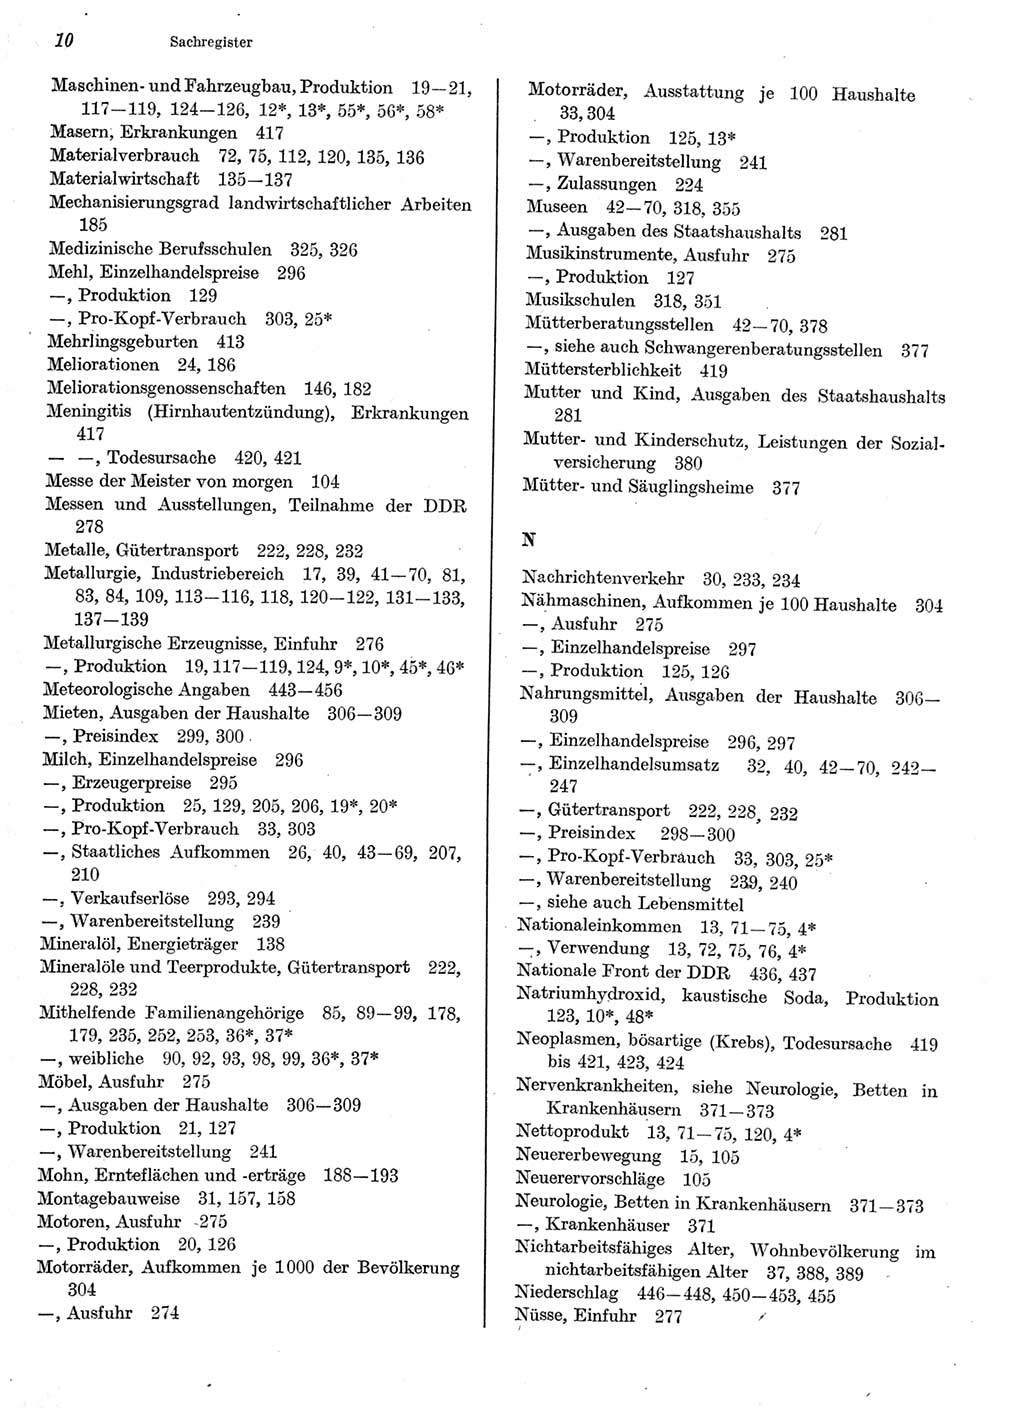 Statistisches Jahrbuch der Deutschen Demokratischen Republik (DDR) 1977, Seite 10 (Stat. Jb. DDR 1977, S. 10)